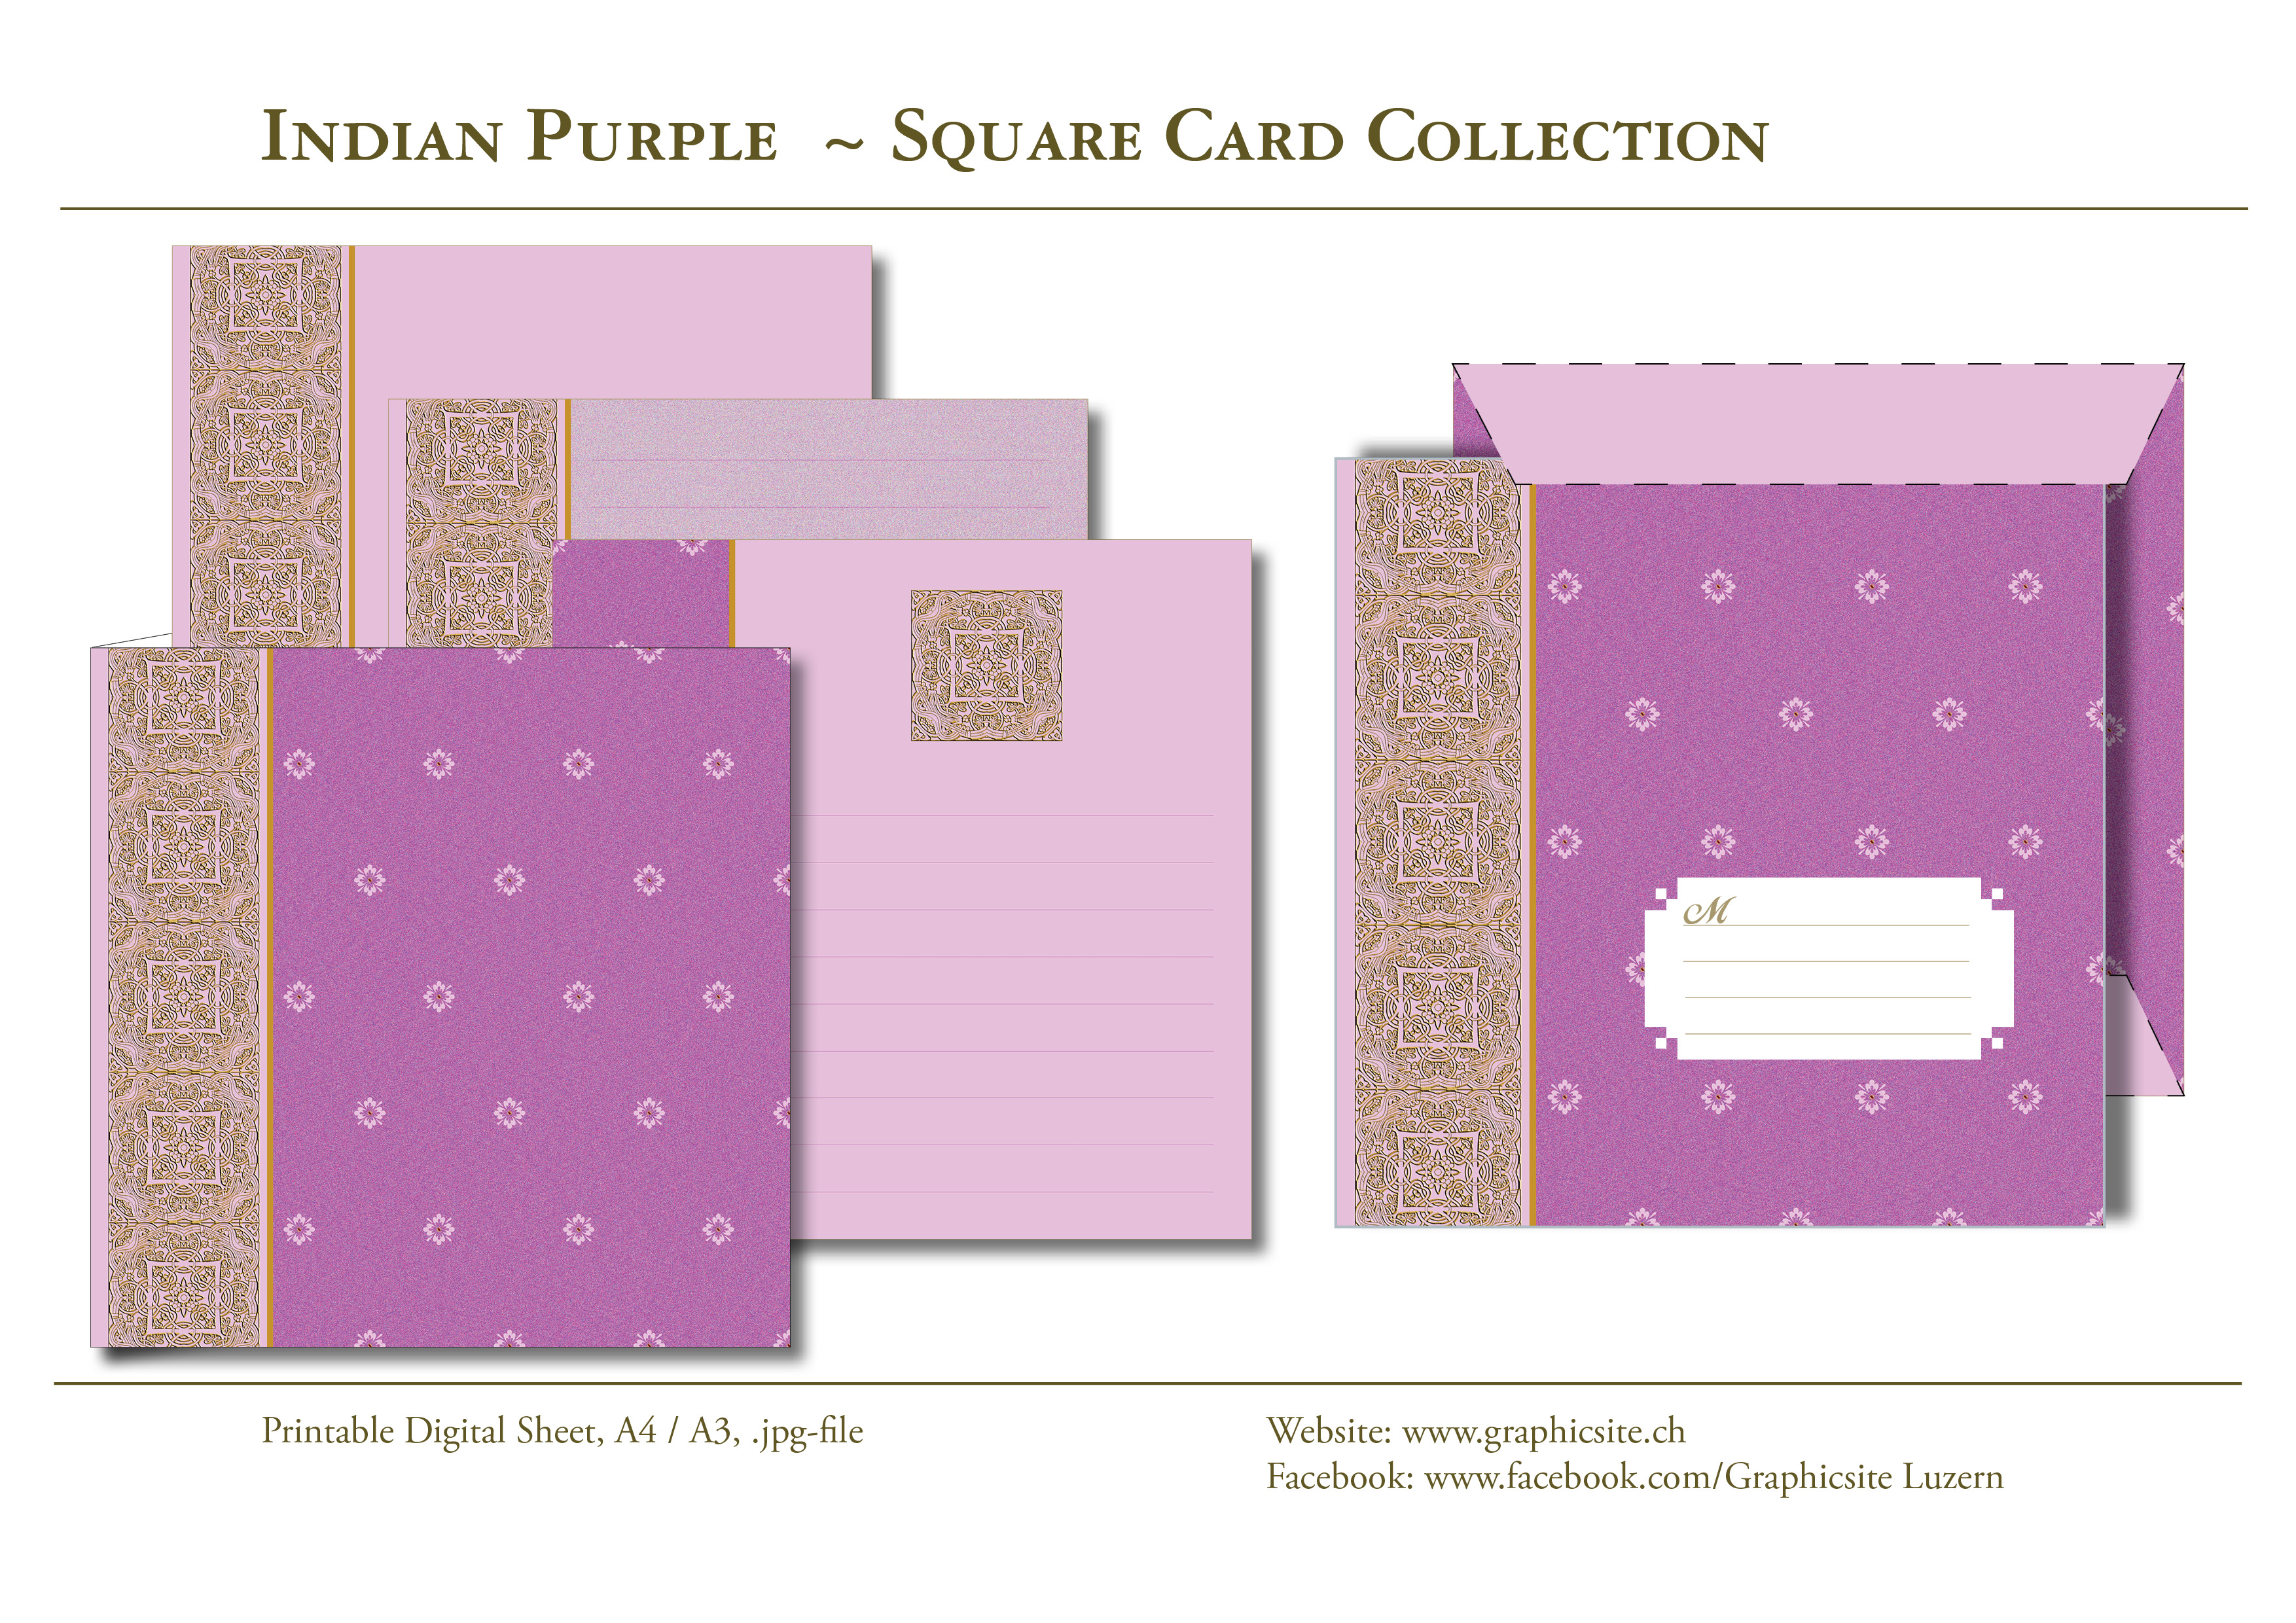 IndianPurple - Violett - Kartenkollektion - Kuvert, Indien,  Yoga, Meditation, druckbare Karten, download, Graphic Design Luzern, Grafiker Luzern, Schweiz